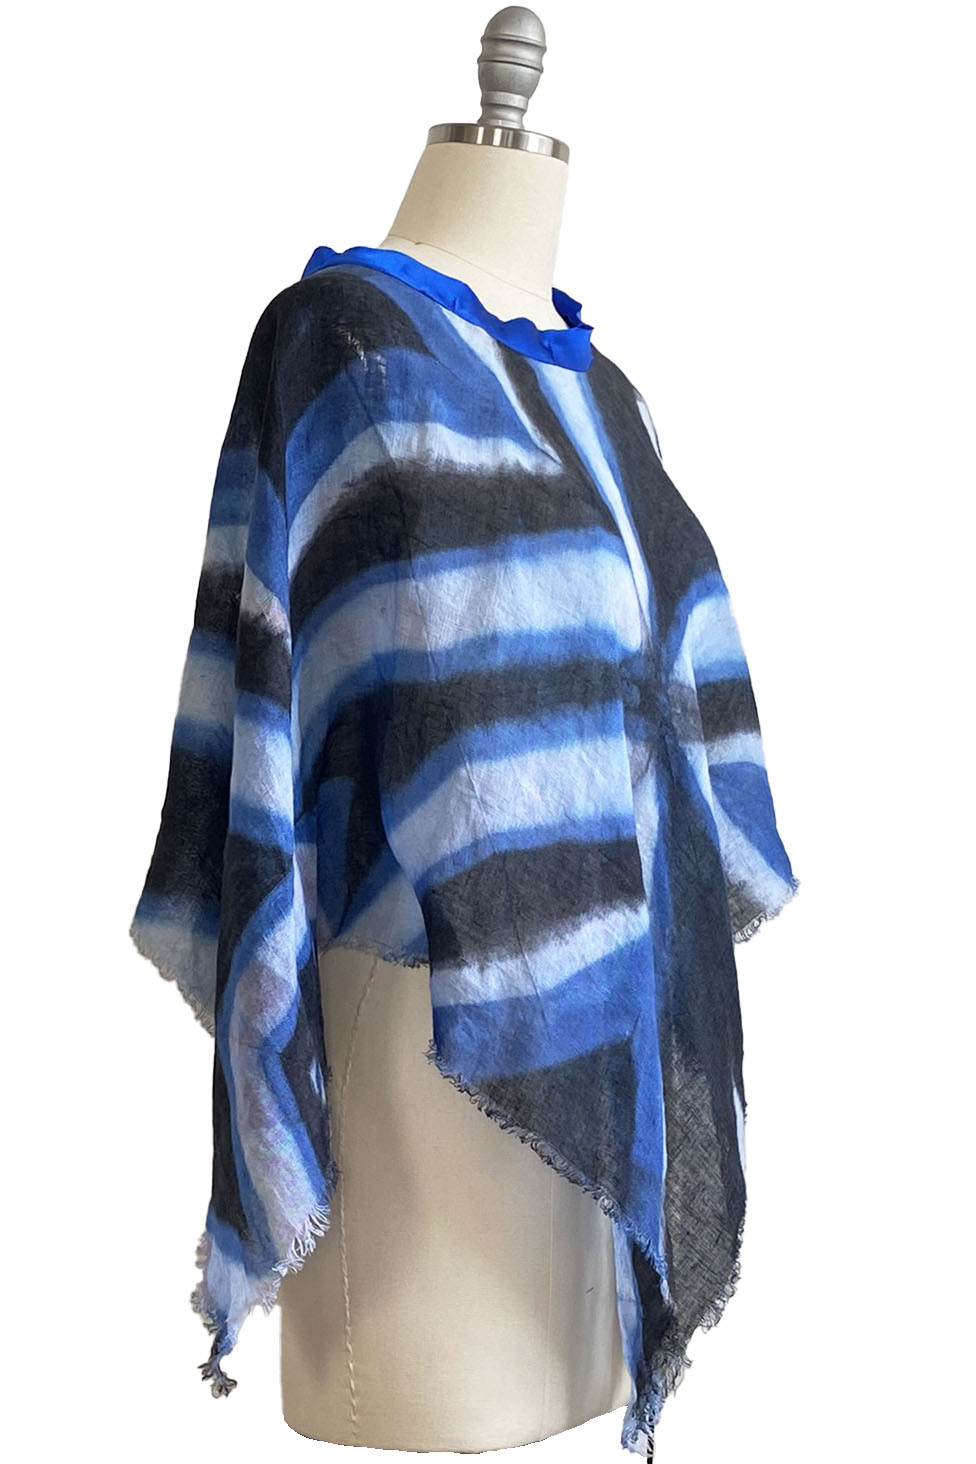 Poncho in Open Weave Linen w/ Itajime Dye - Blue, White & Black